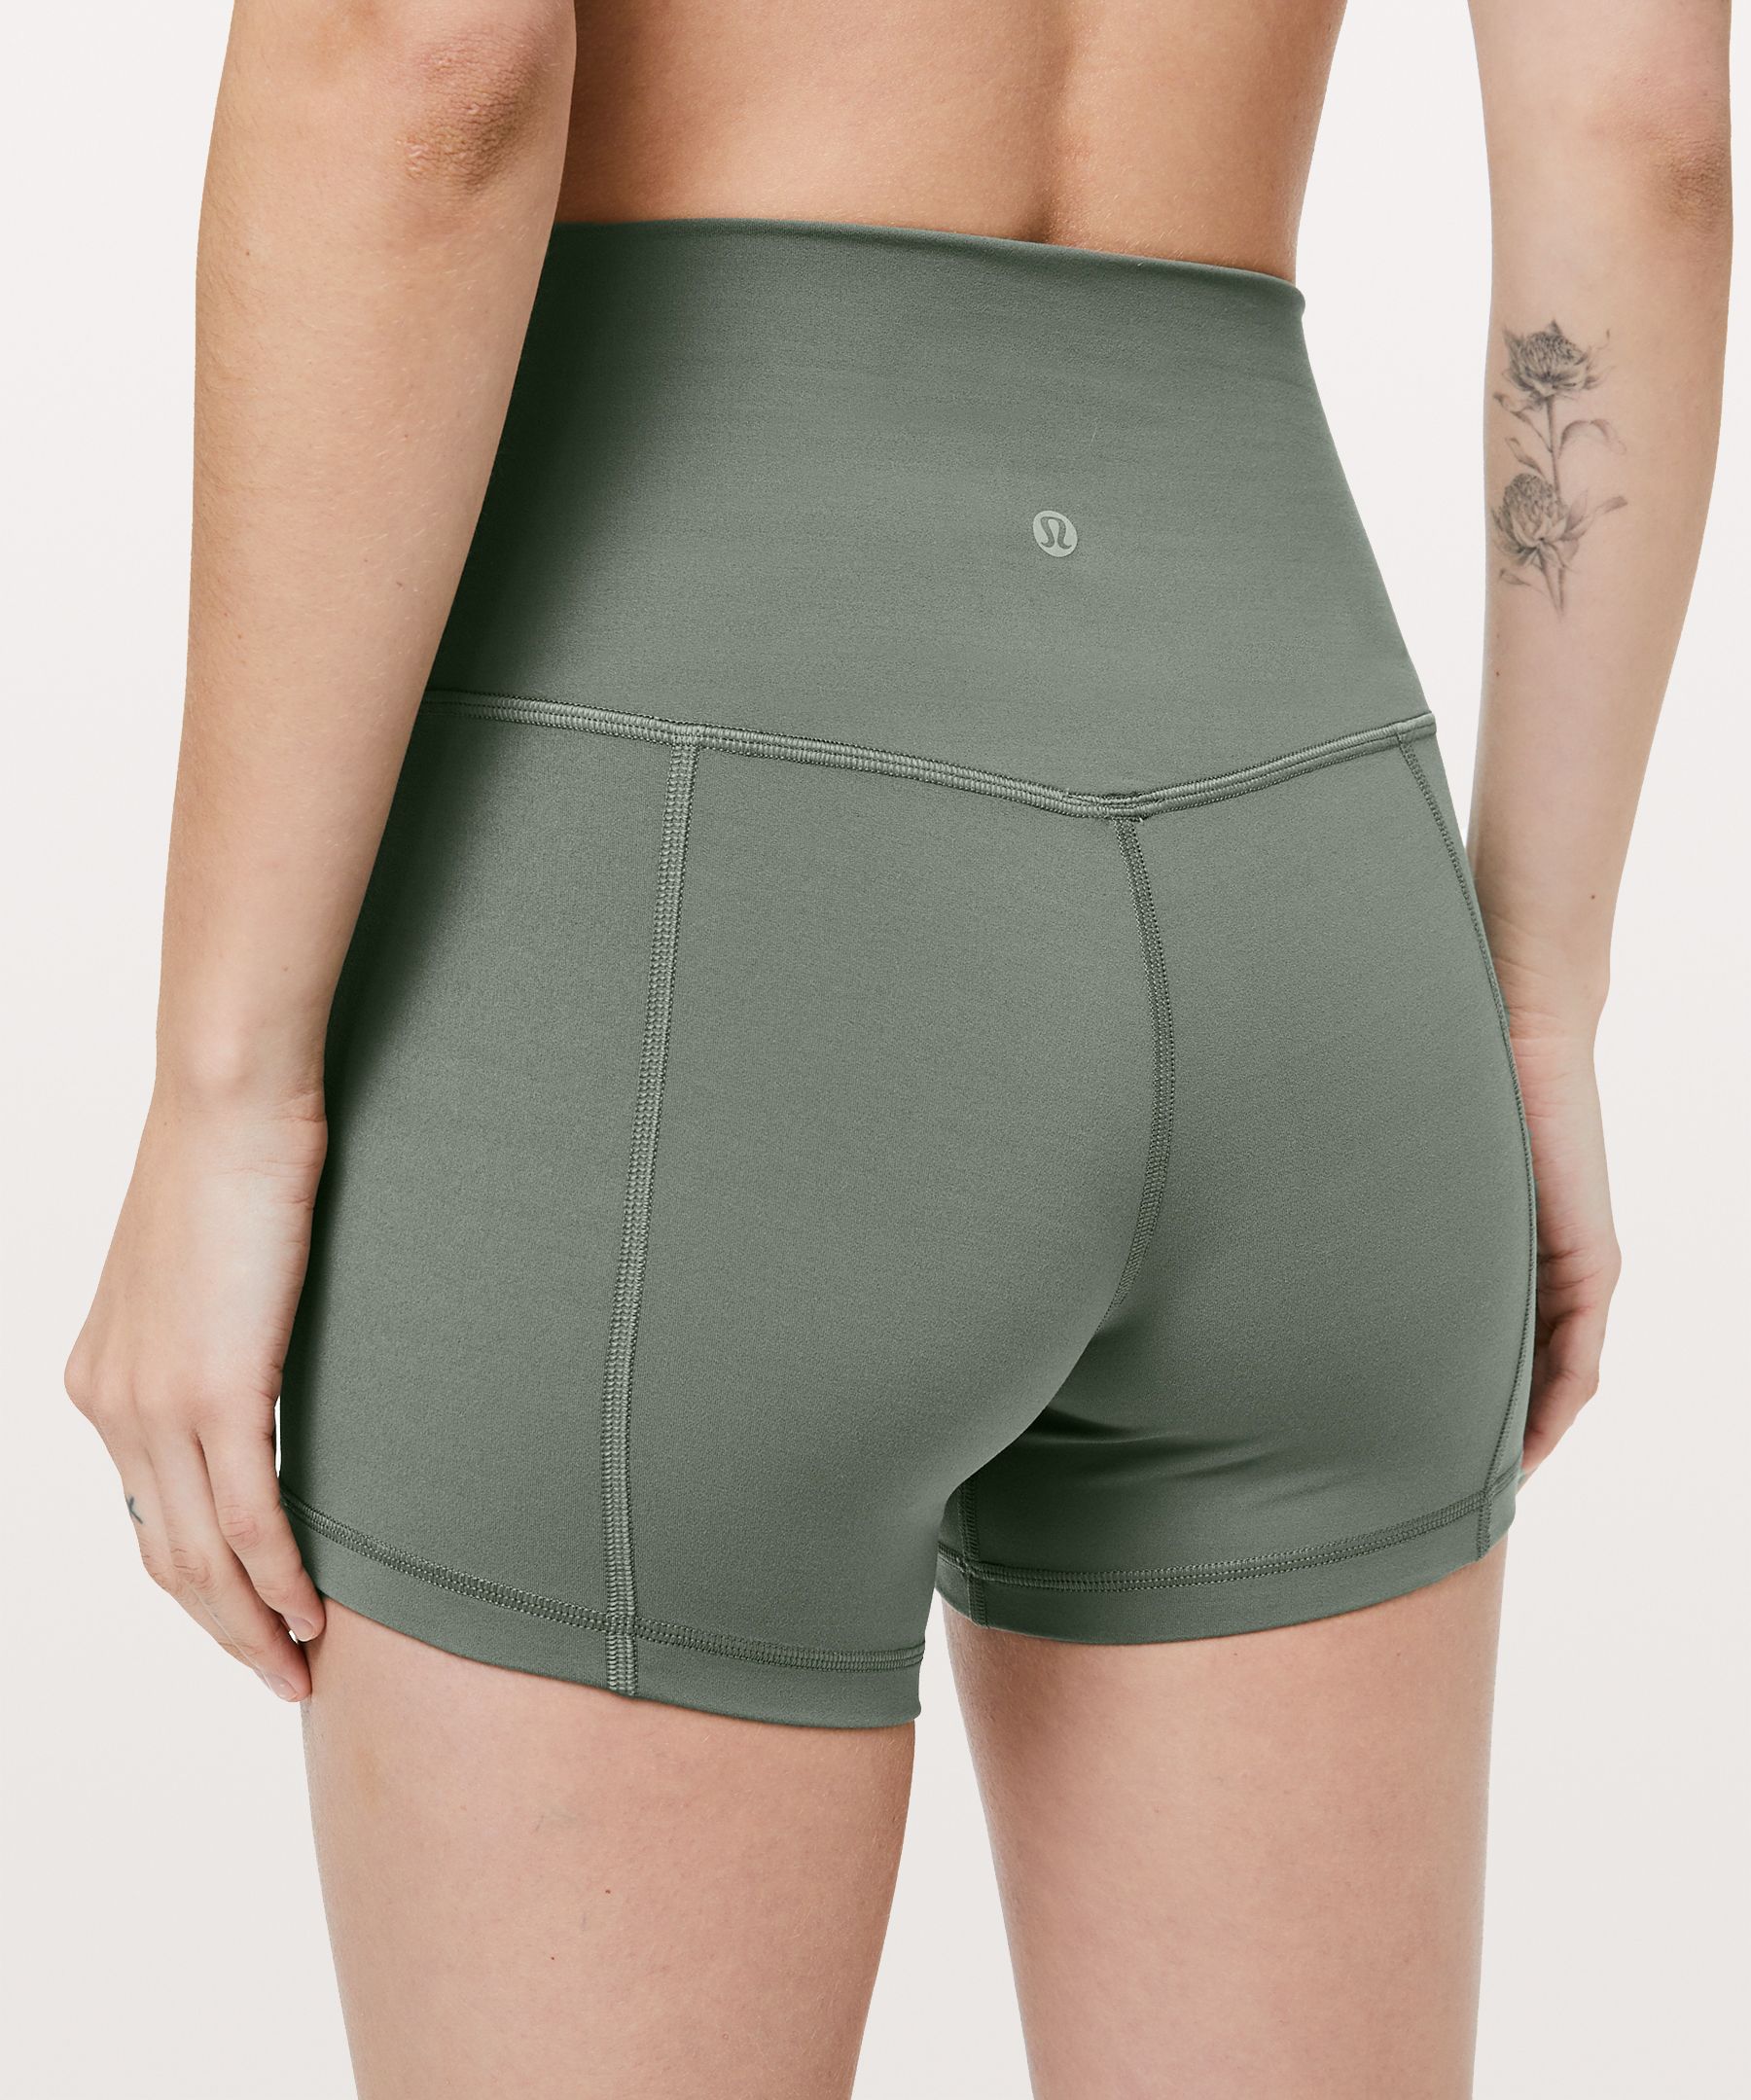 Lululemon Shorts Size 4 -  UK